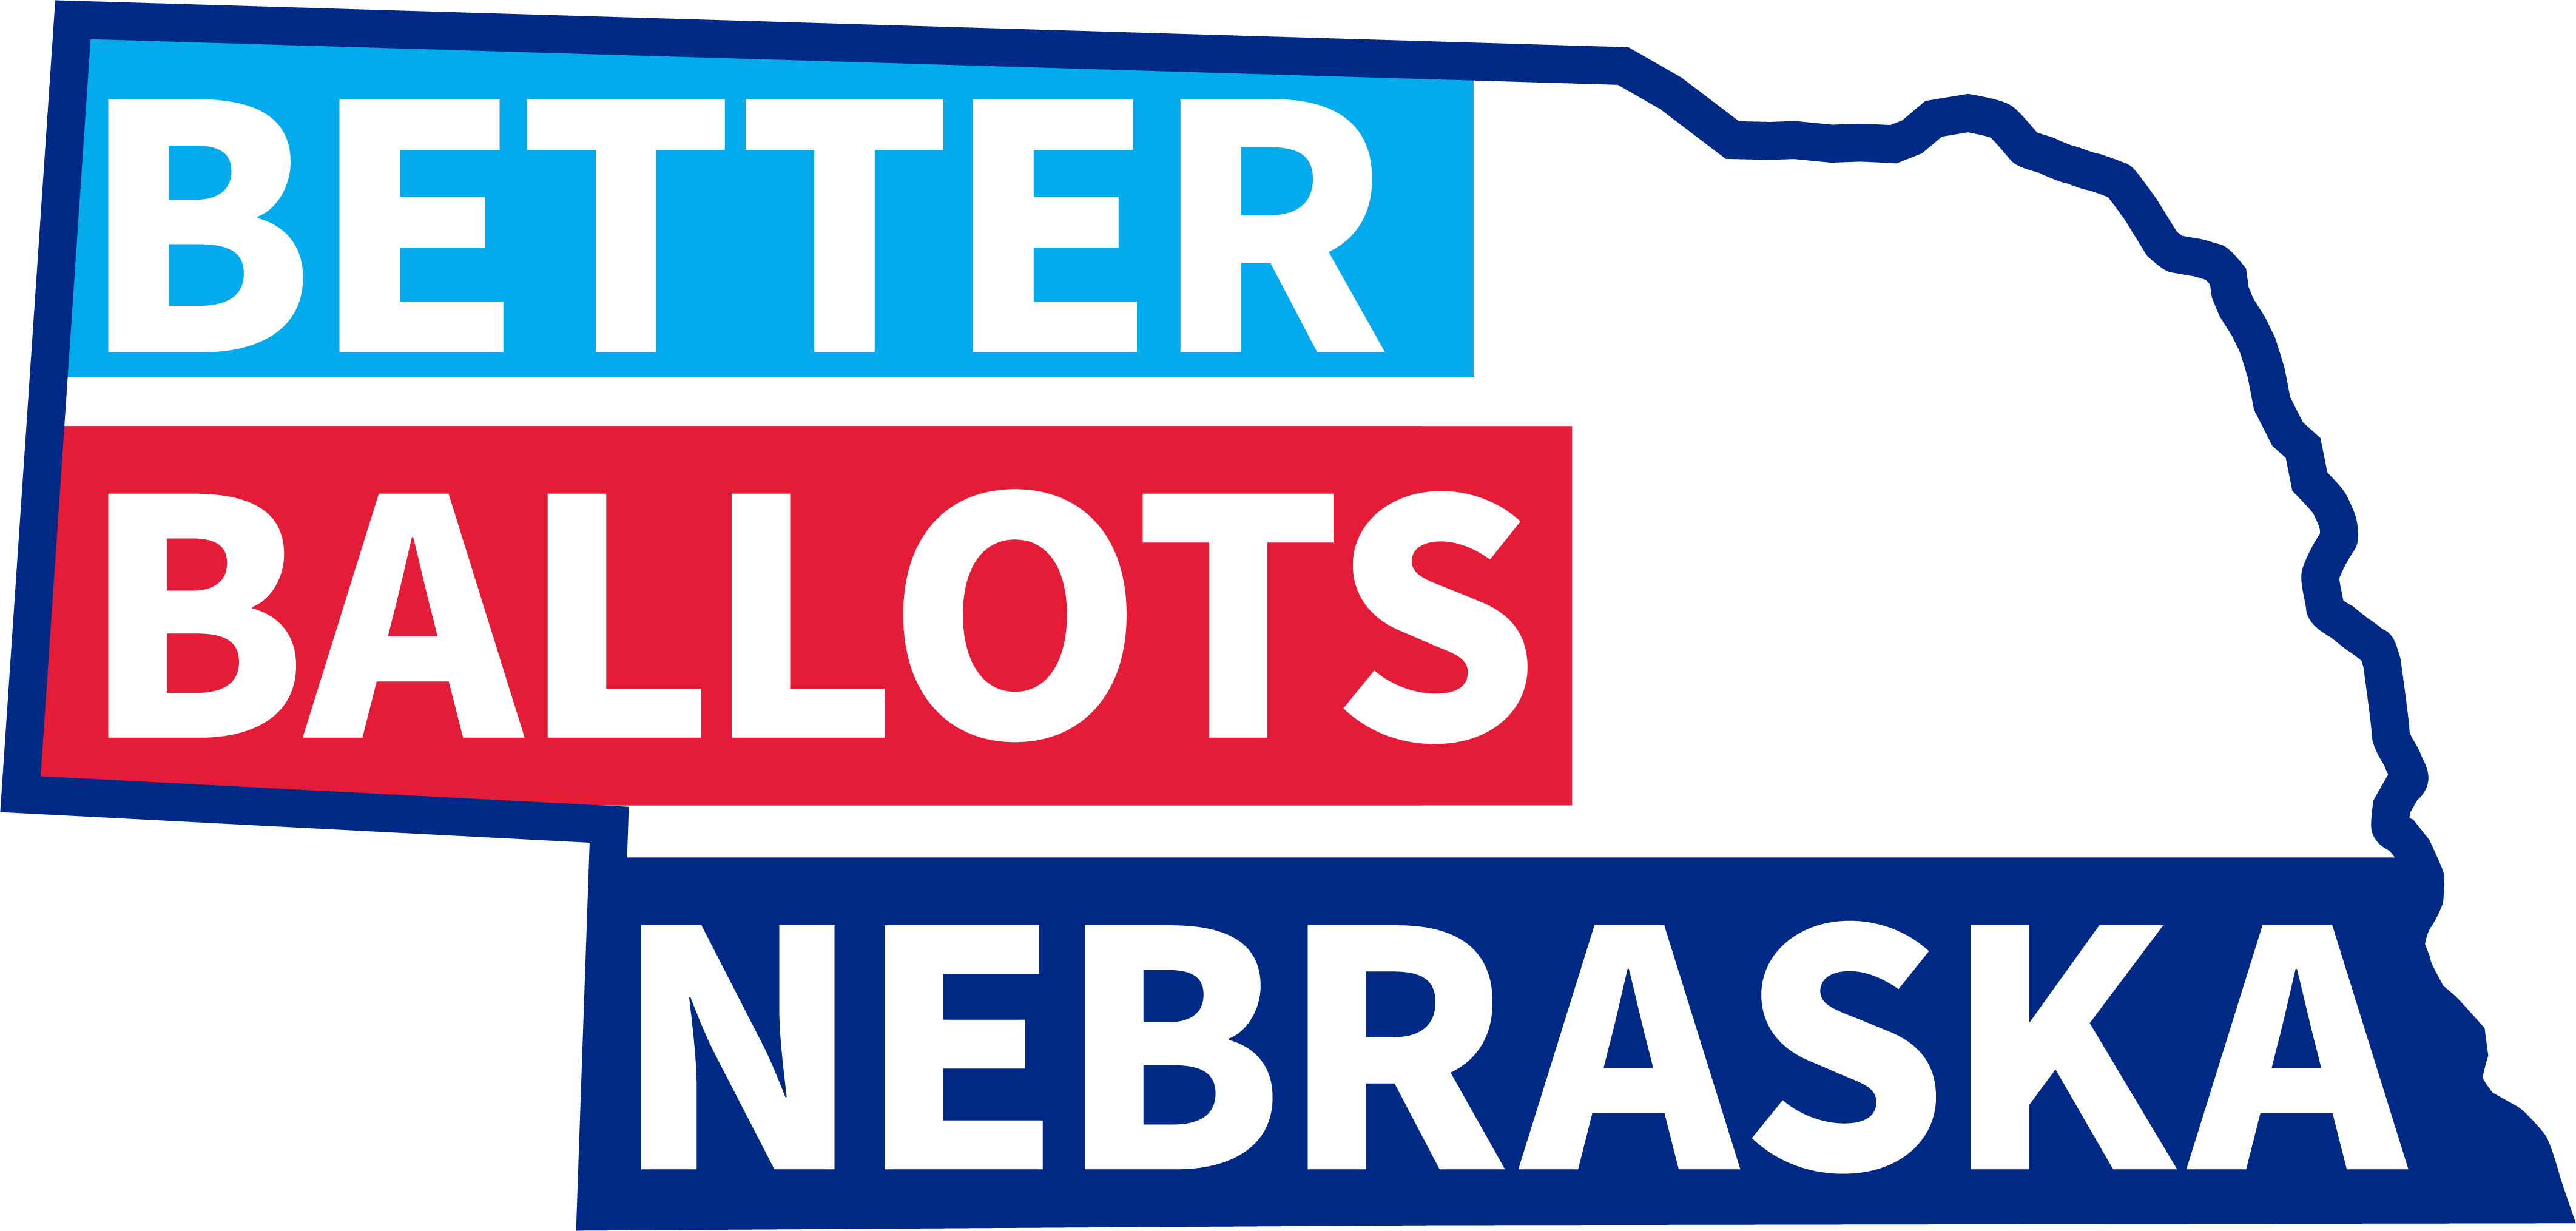 Outline of the state of Nebraska with Better Ballots Nebraska written inside